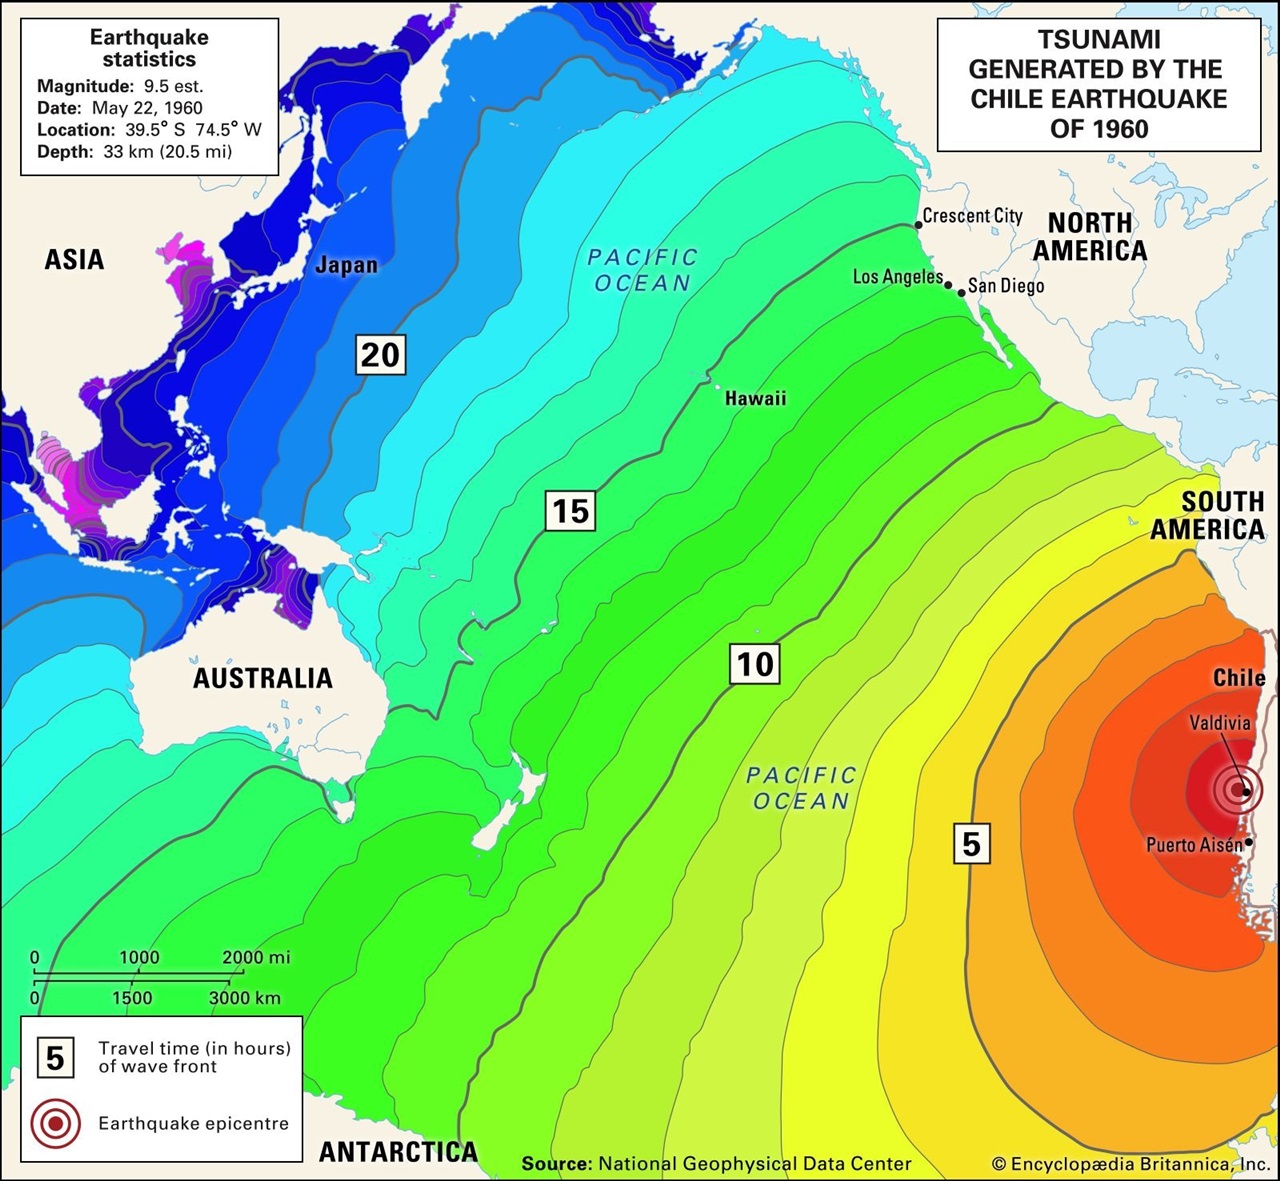 Meral Erden: 20.0 Büyüklüğünde Bir Deprem Olursa Neler Yaşanır? Aslında Teknik Olarak Mümkün! 5